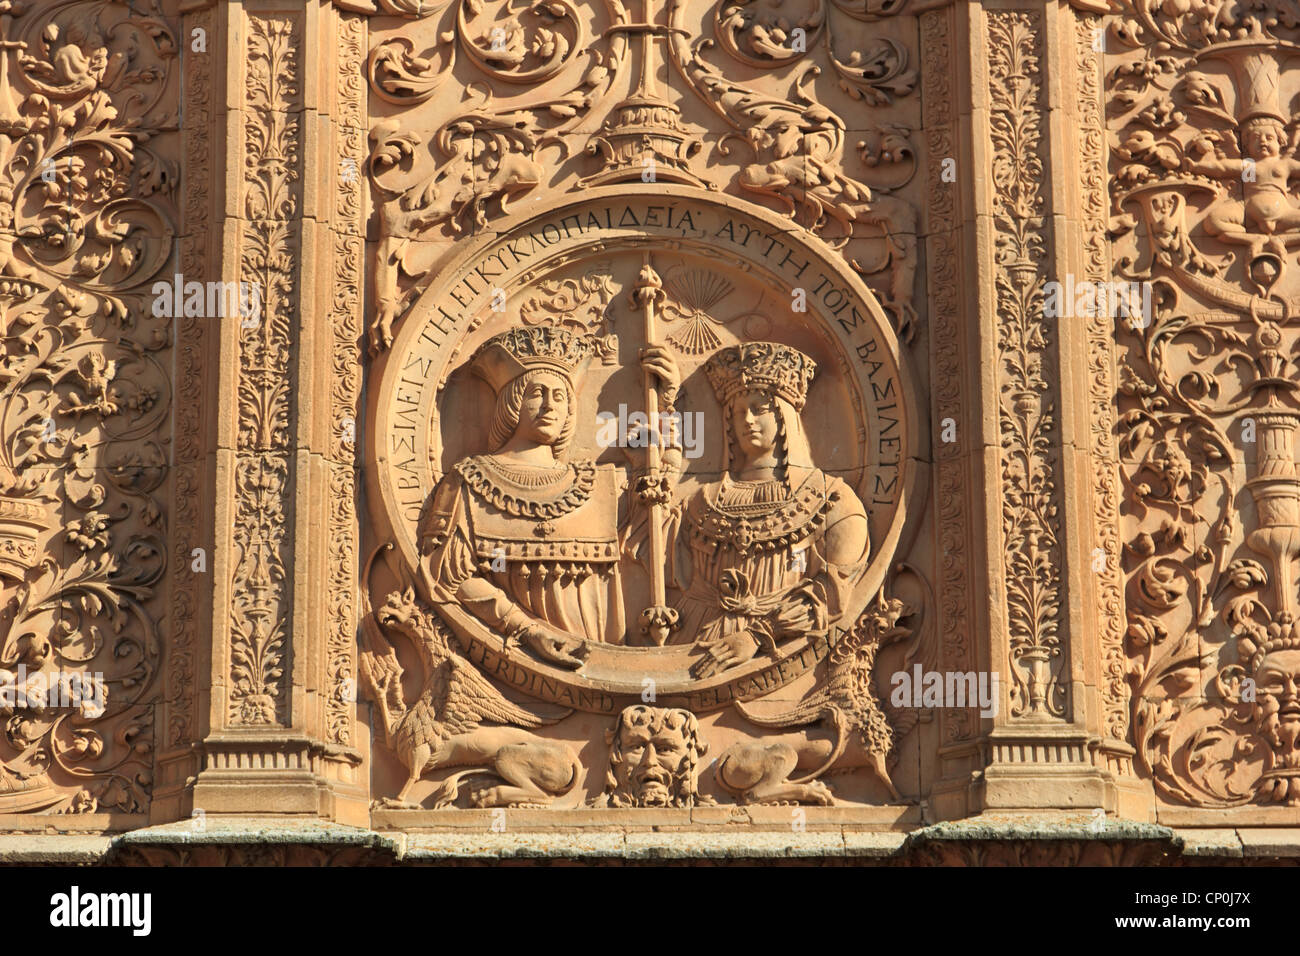 Università di Salamanca - Dettaglio con un medaglione rappresentante i re cattolici Foto Stock